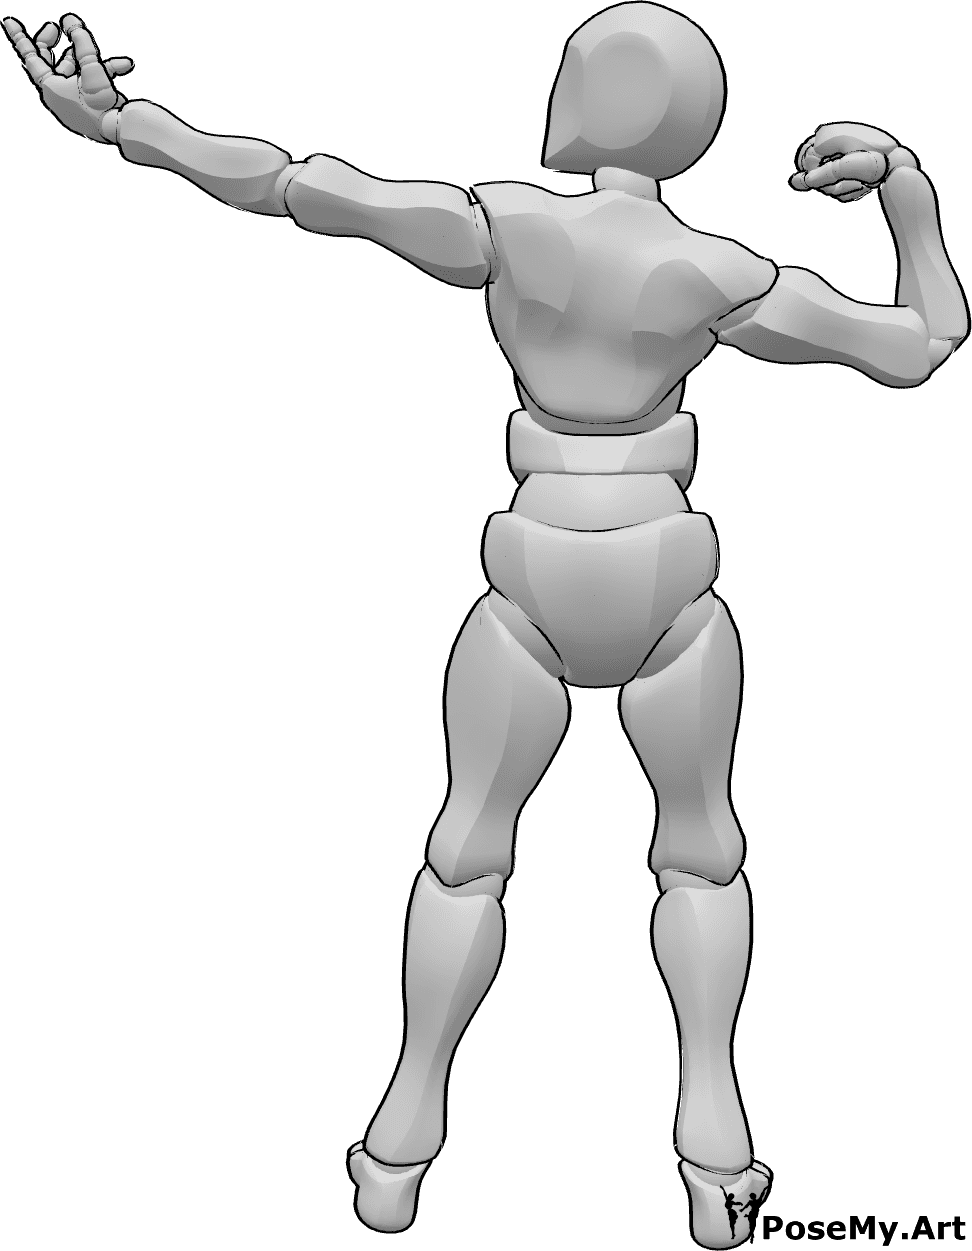 Riferimento alle pose- Posa dei muscoli maschili - Uomo che mostra i suoi muscoli in posa